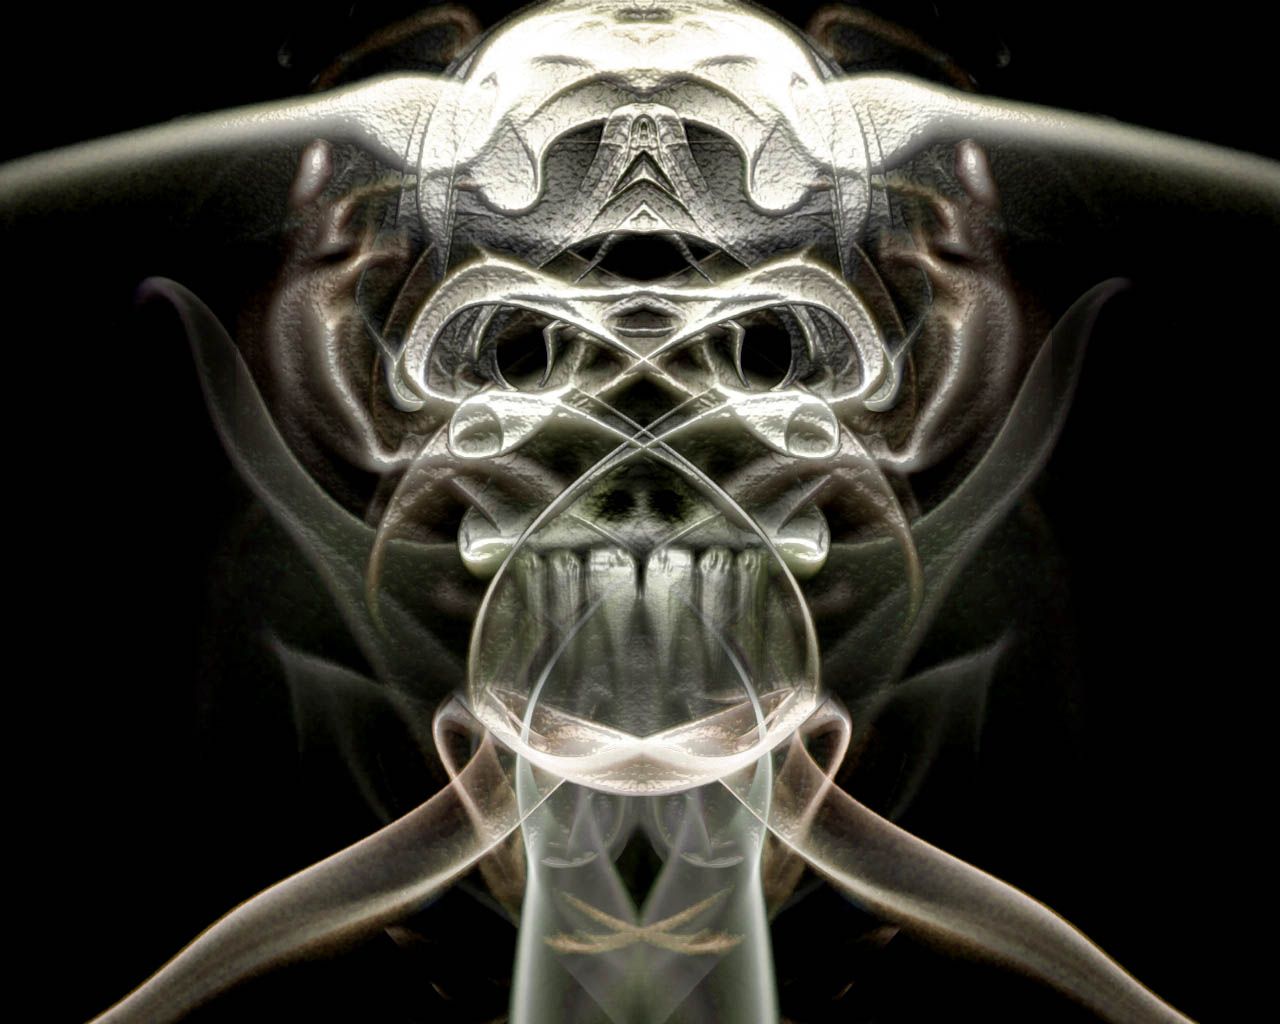 Smoking skull by skummelum on DeviantArt